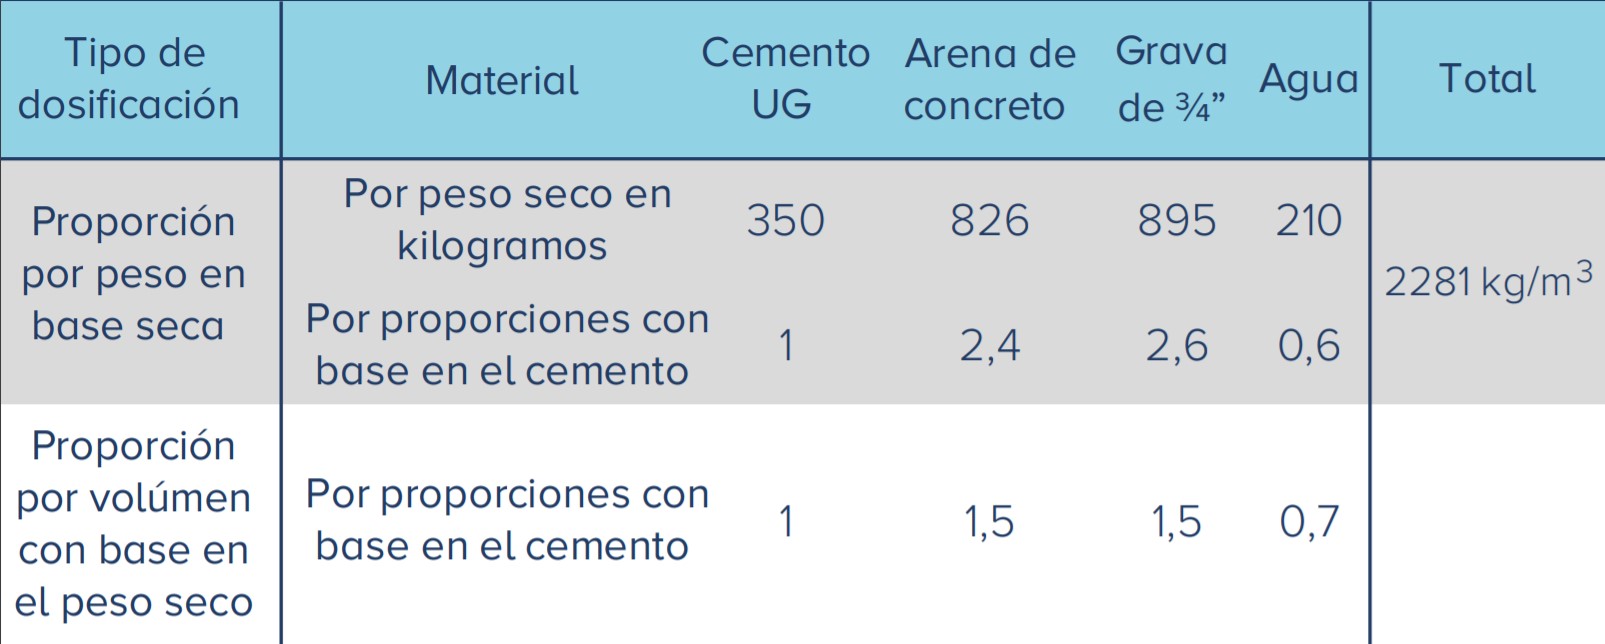 Tabla de concretos y morteros de Cemento Alión para uso general de 3000psi o 21MPa